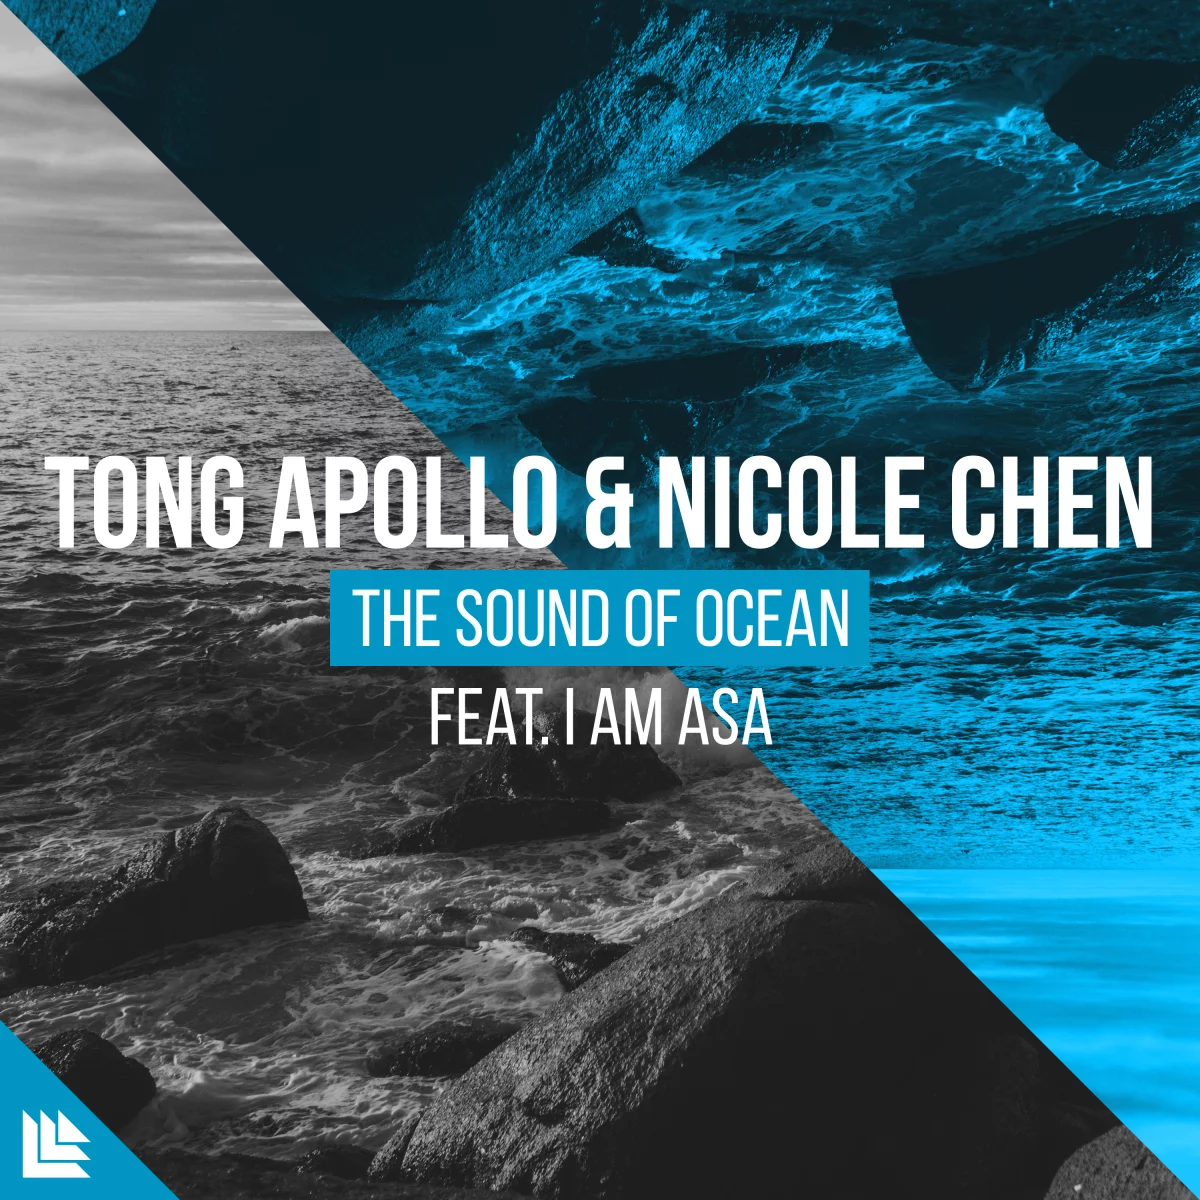 The Sound Of Ocean - Tong Apollo⁠ & Nicole Chen⁠ feat. I Am Asa⁠ 